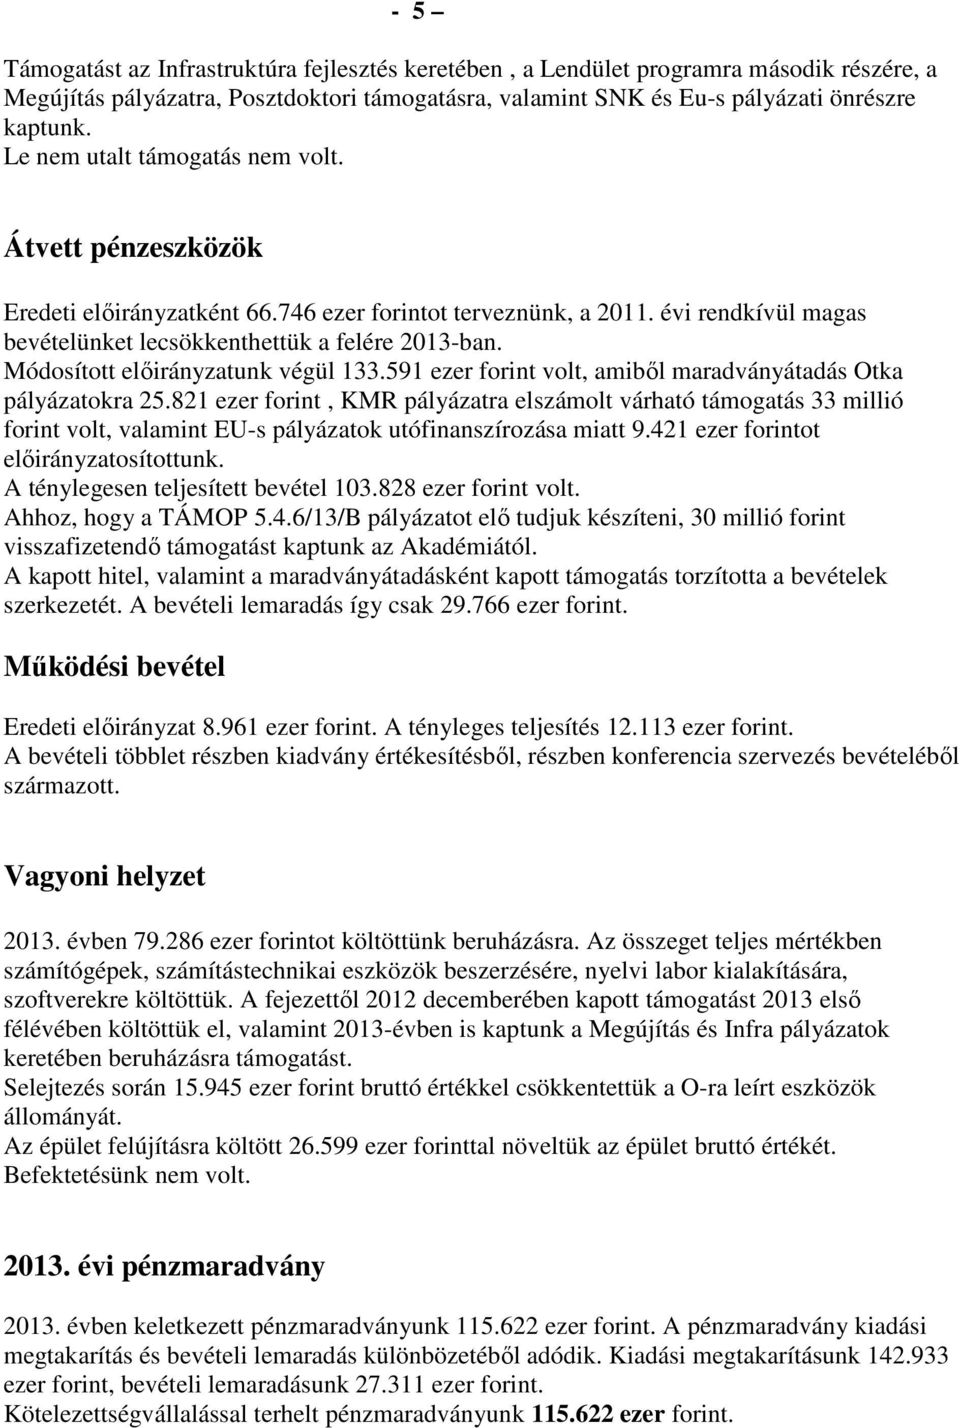 Módosított elıirányzatunk végül 133.591 ezer forint volt, amibıl maradványátadás Otka pályázatokra 25.